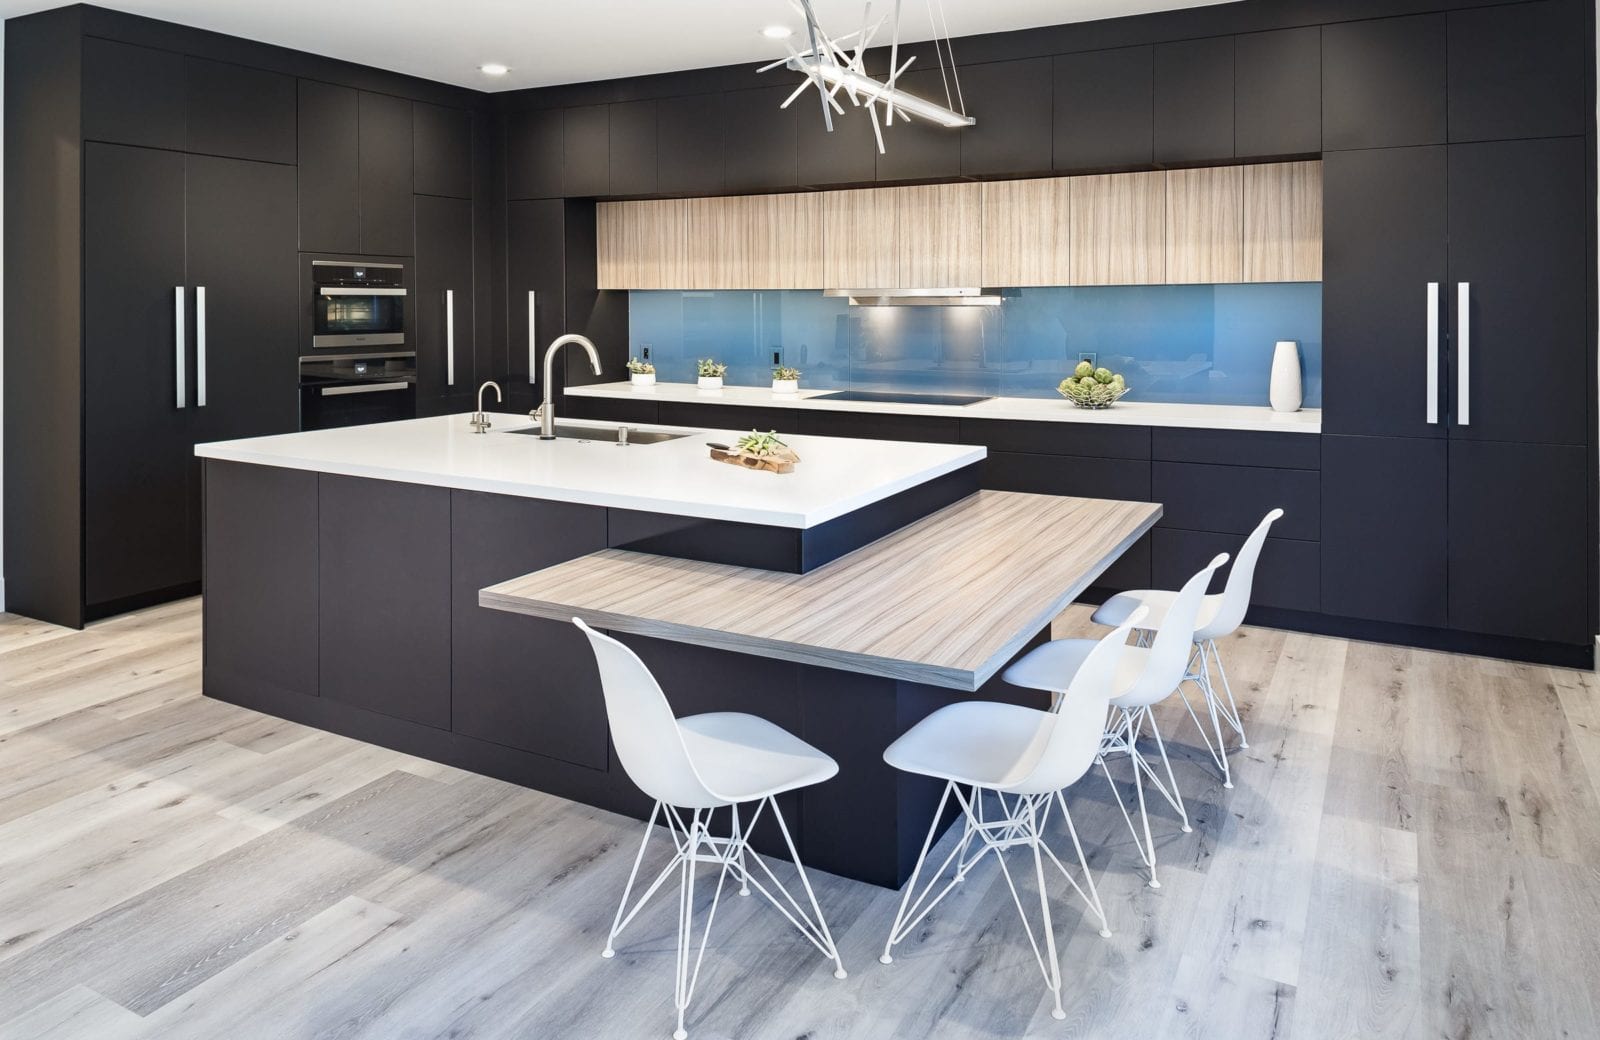 2020 REMMIE Bay Area Residential Interior Modern Open Plan Kitchen Award Winner